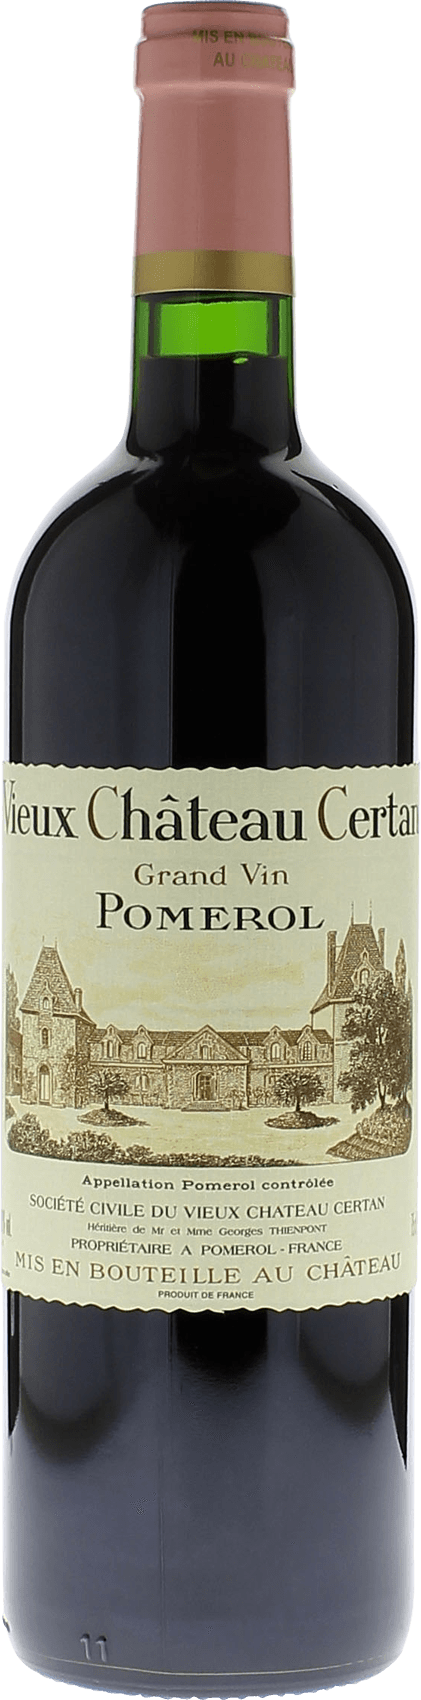 Vieux chteau  certan 2018  Pomerol, Bordeaux rouge